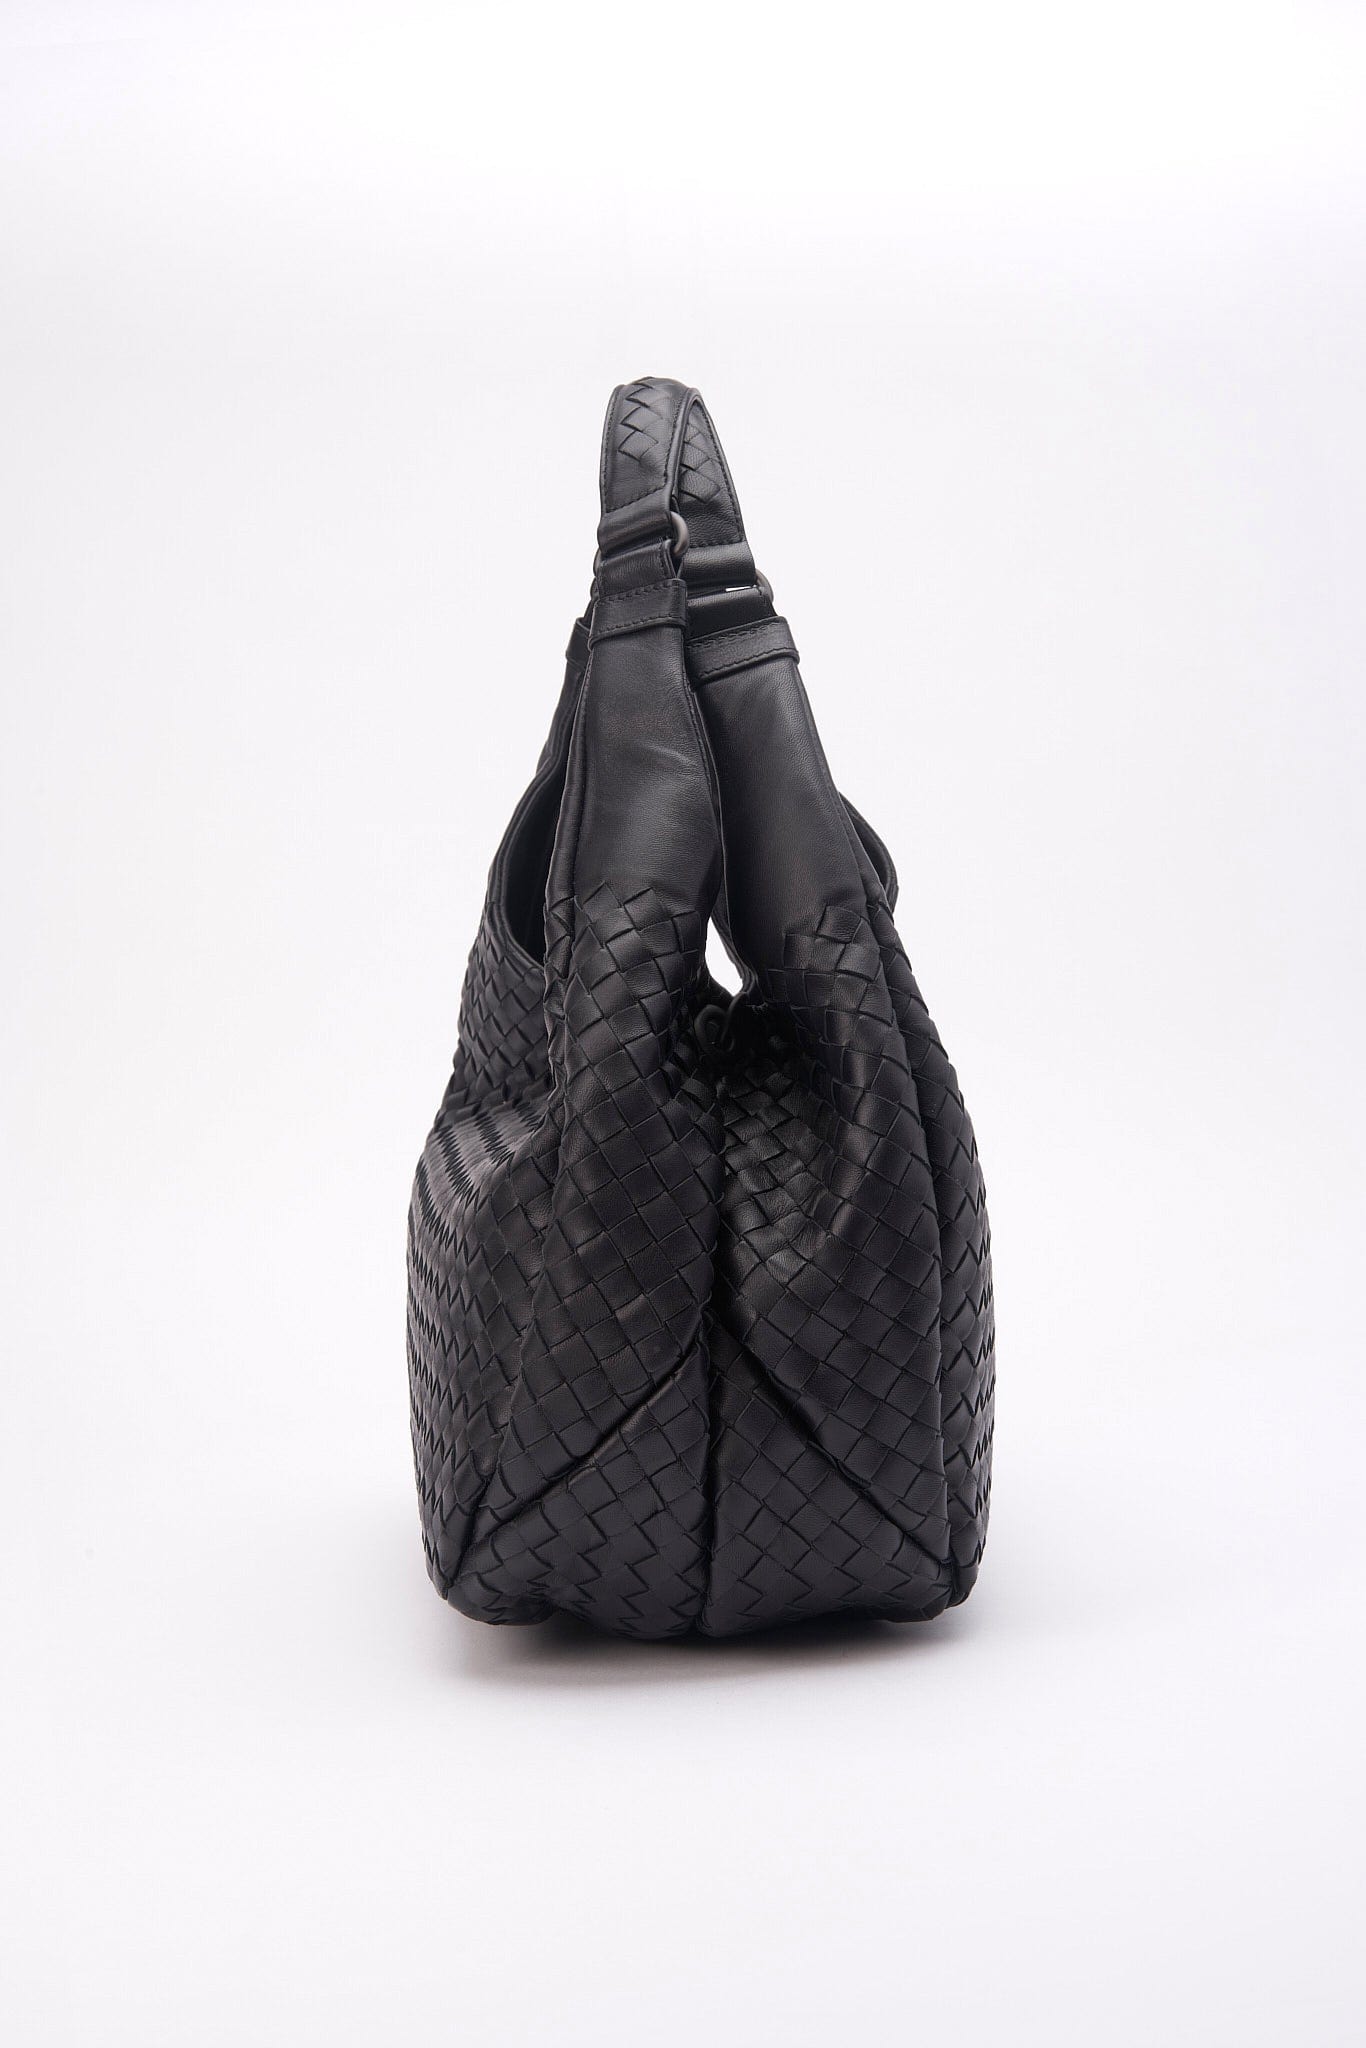 Vintage Bottega Veneta Black Intrecciato Leather Hobo Shoulder Bag